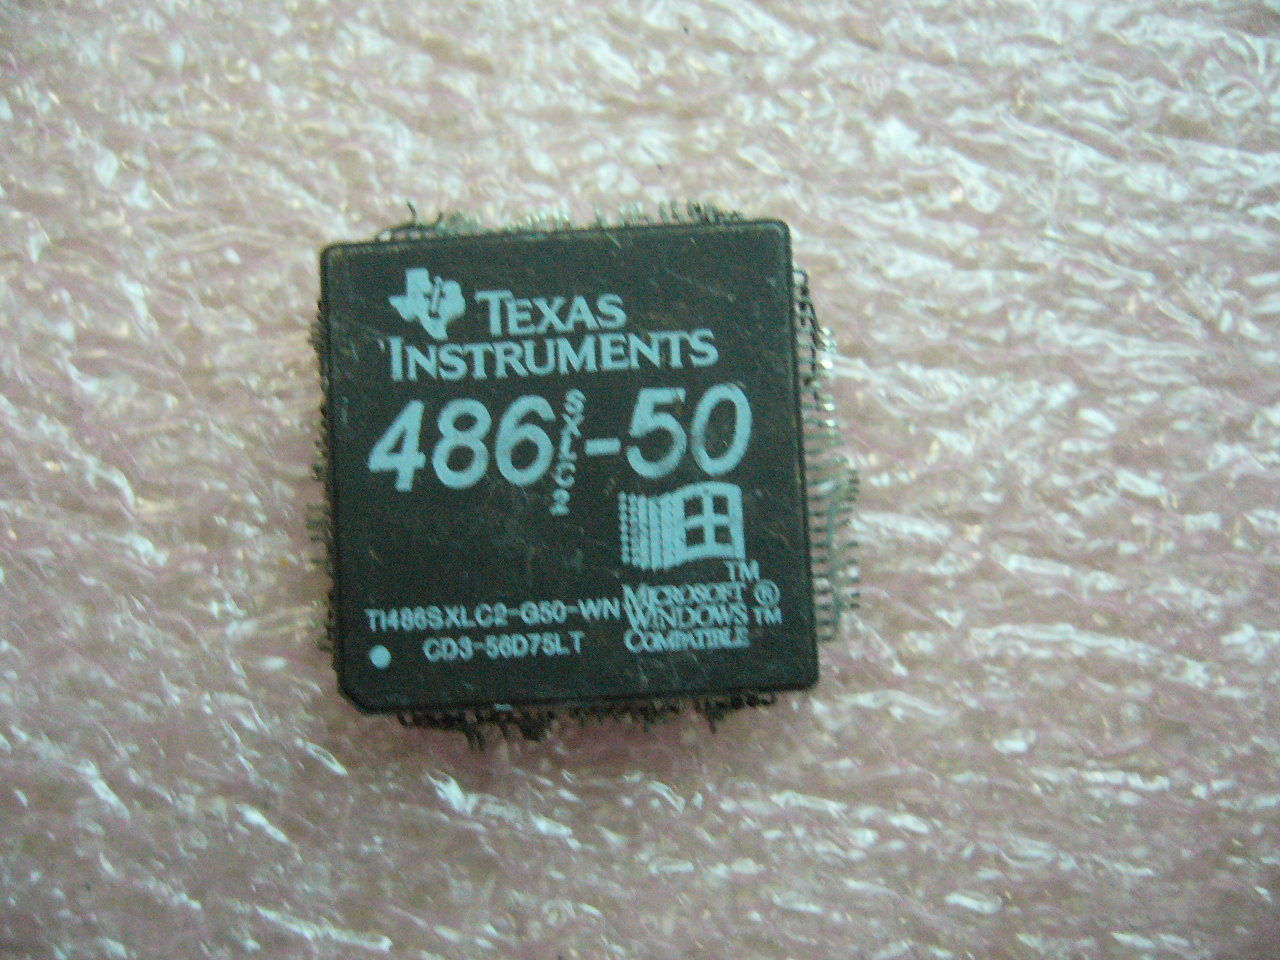 QTY 1x Vintage CPU TI486SXLC2-G50-WN - Click Image to Close